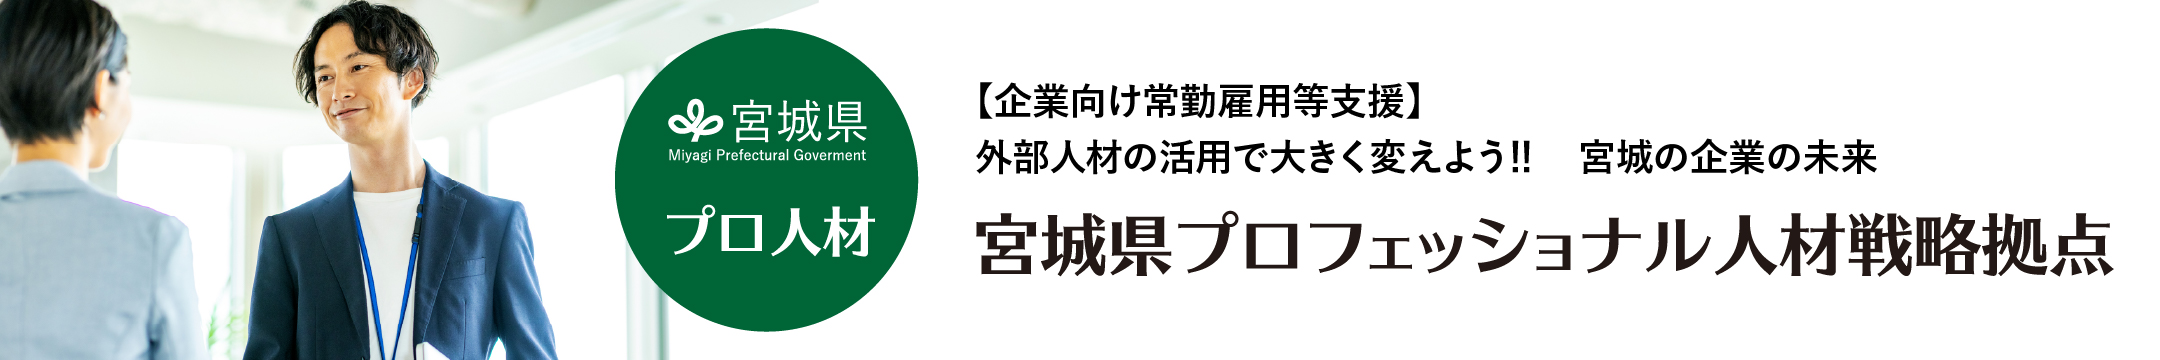 宮城県による中小企業のためのプロ人材採用相談 宮城県プロフェッショナル人材戦略拠点運営事業 Miyagi Prefectural Goverment